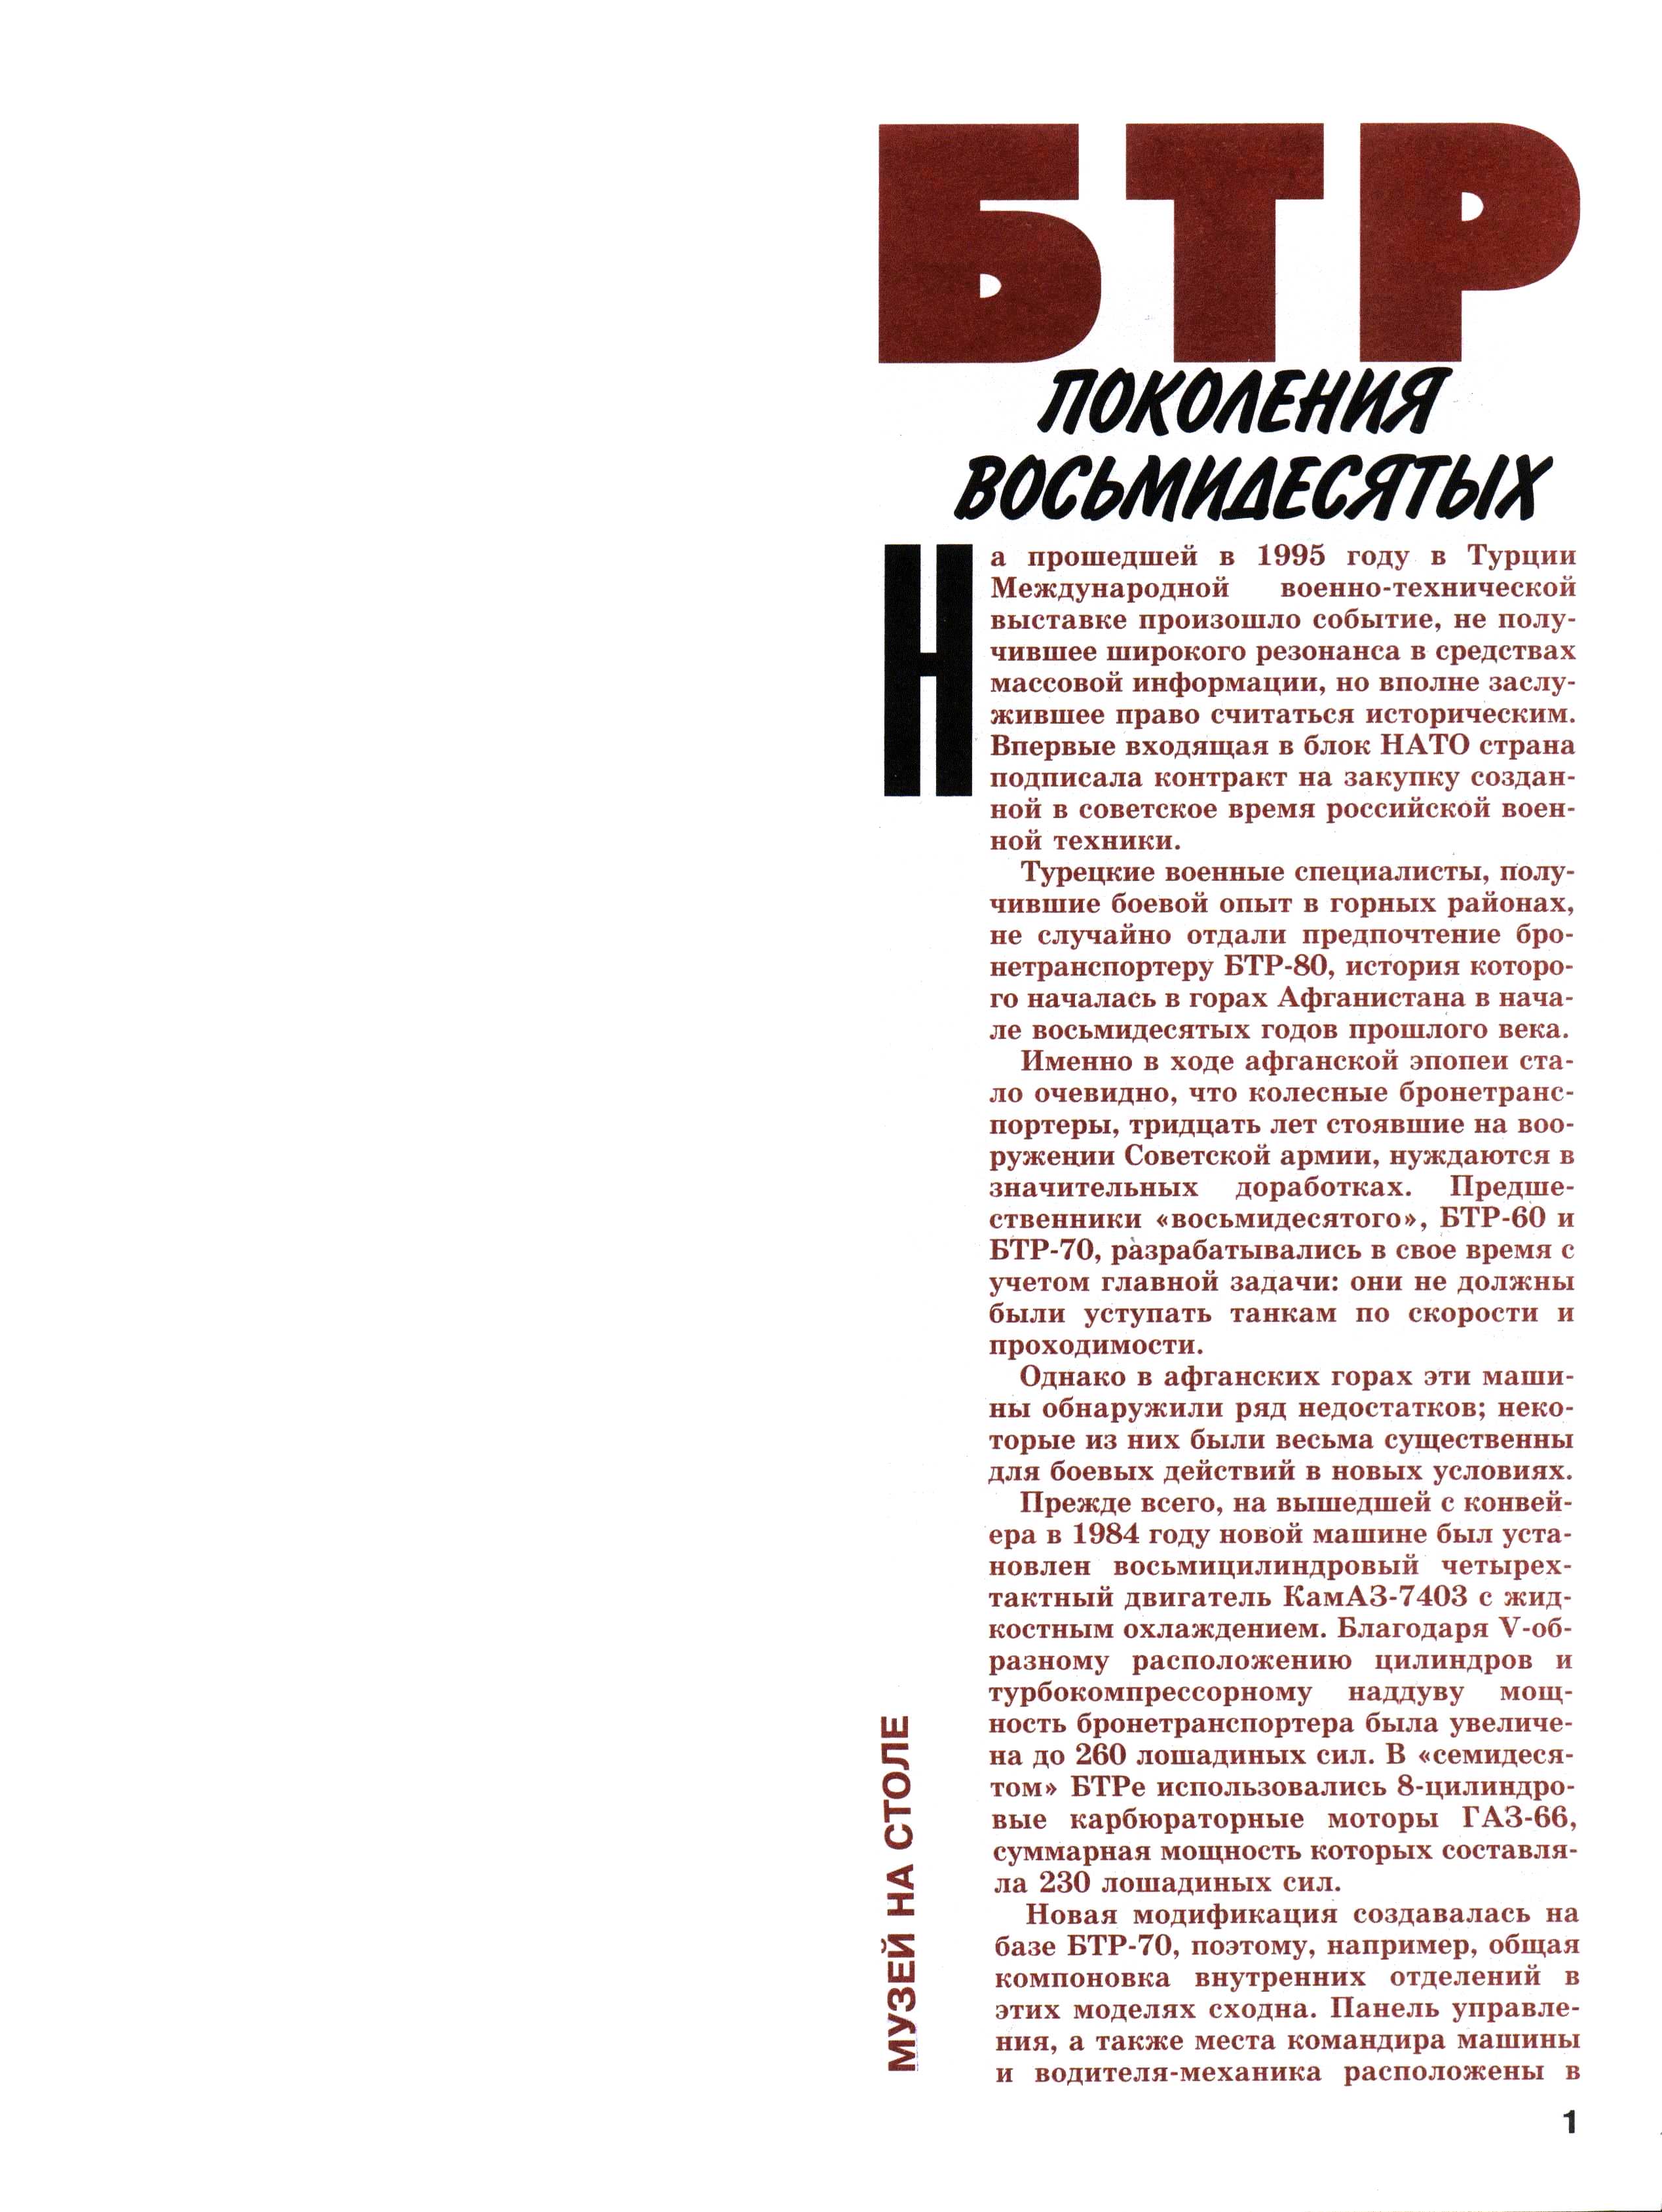 "Левша" 4, 2005, 1 c.